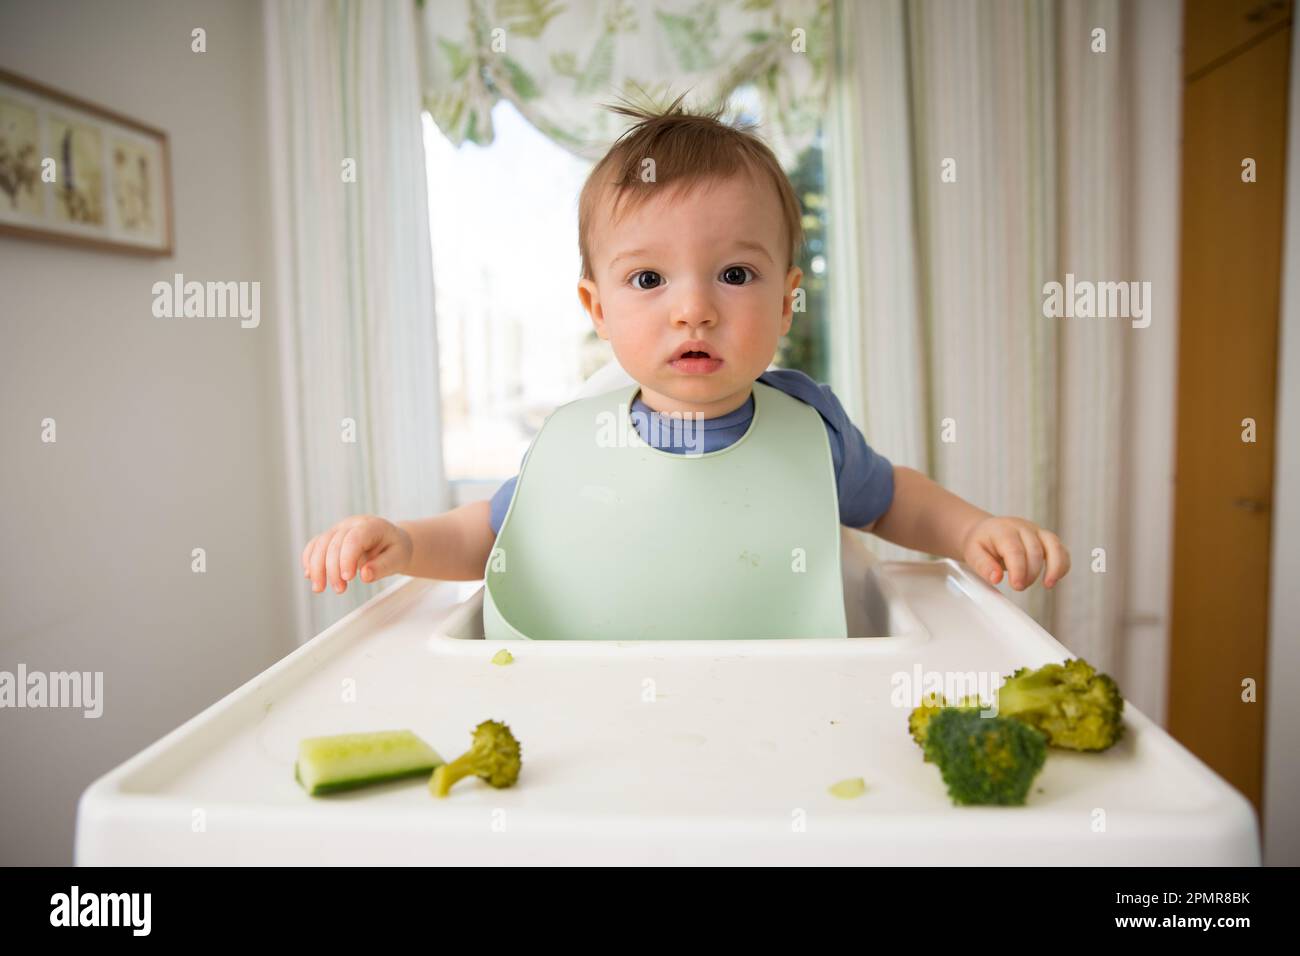 Bébé mignon mangeant d'abord de la nourriture solide, bébé assis dans une chaise haute. Enfant goûtant des légumes à la table, découvrant de nouveaux aliments. Cuisine intérieure confortable. Banque D'Images